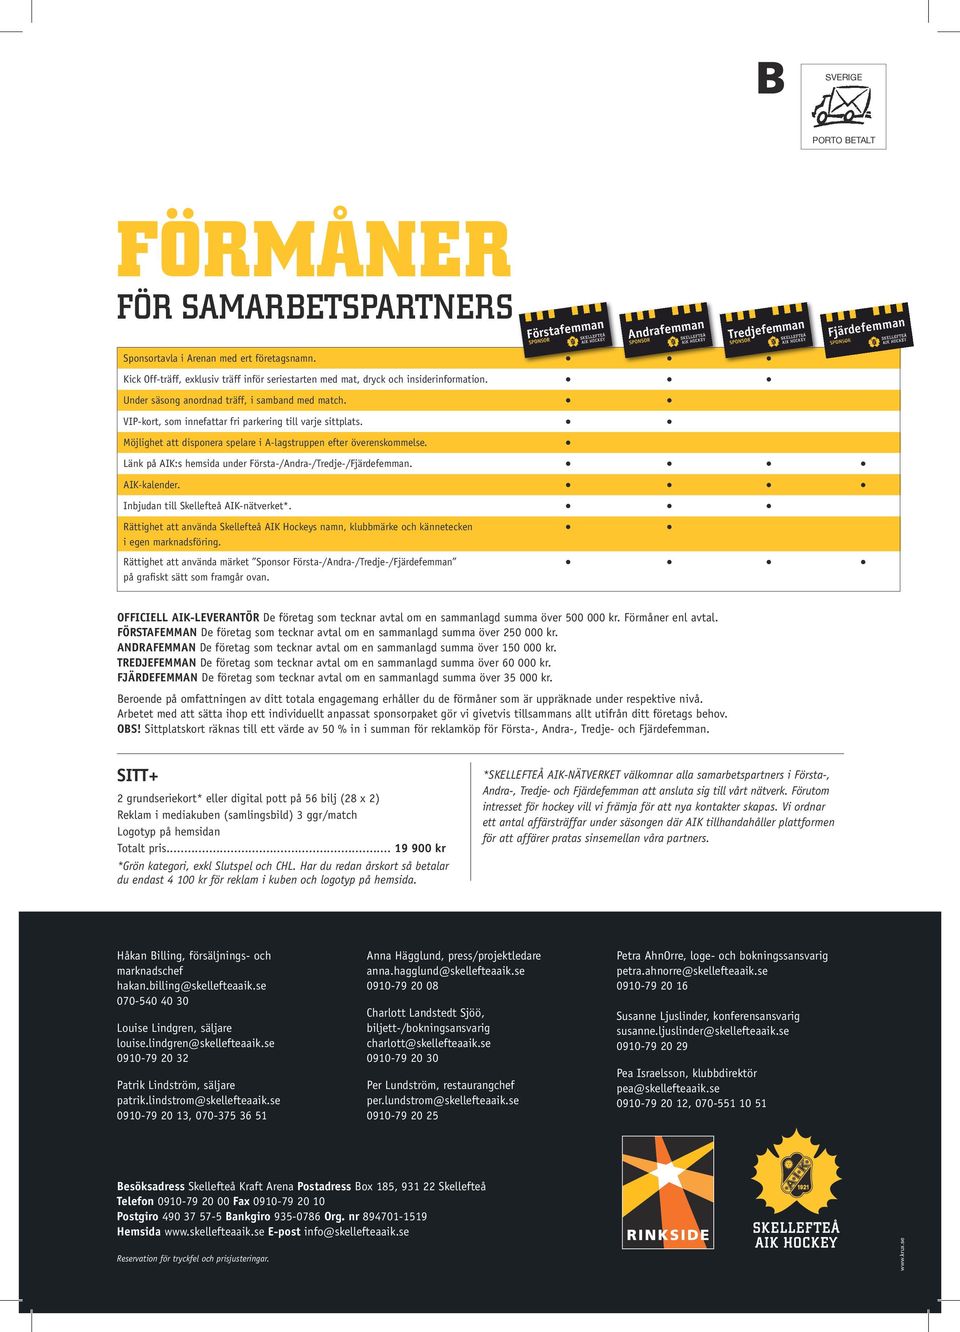 Länk på AIK:s hemsida under Första-/Andra-/Tredje-/Fjärdefemman. AIK-kalender. Inbjudan till Skellefteå AIK-nätverket*.